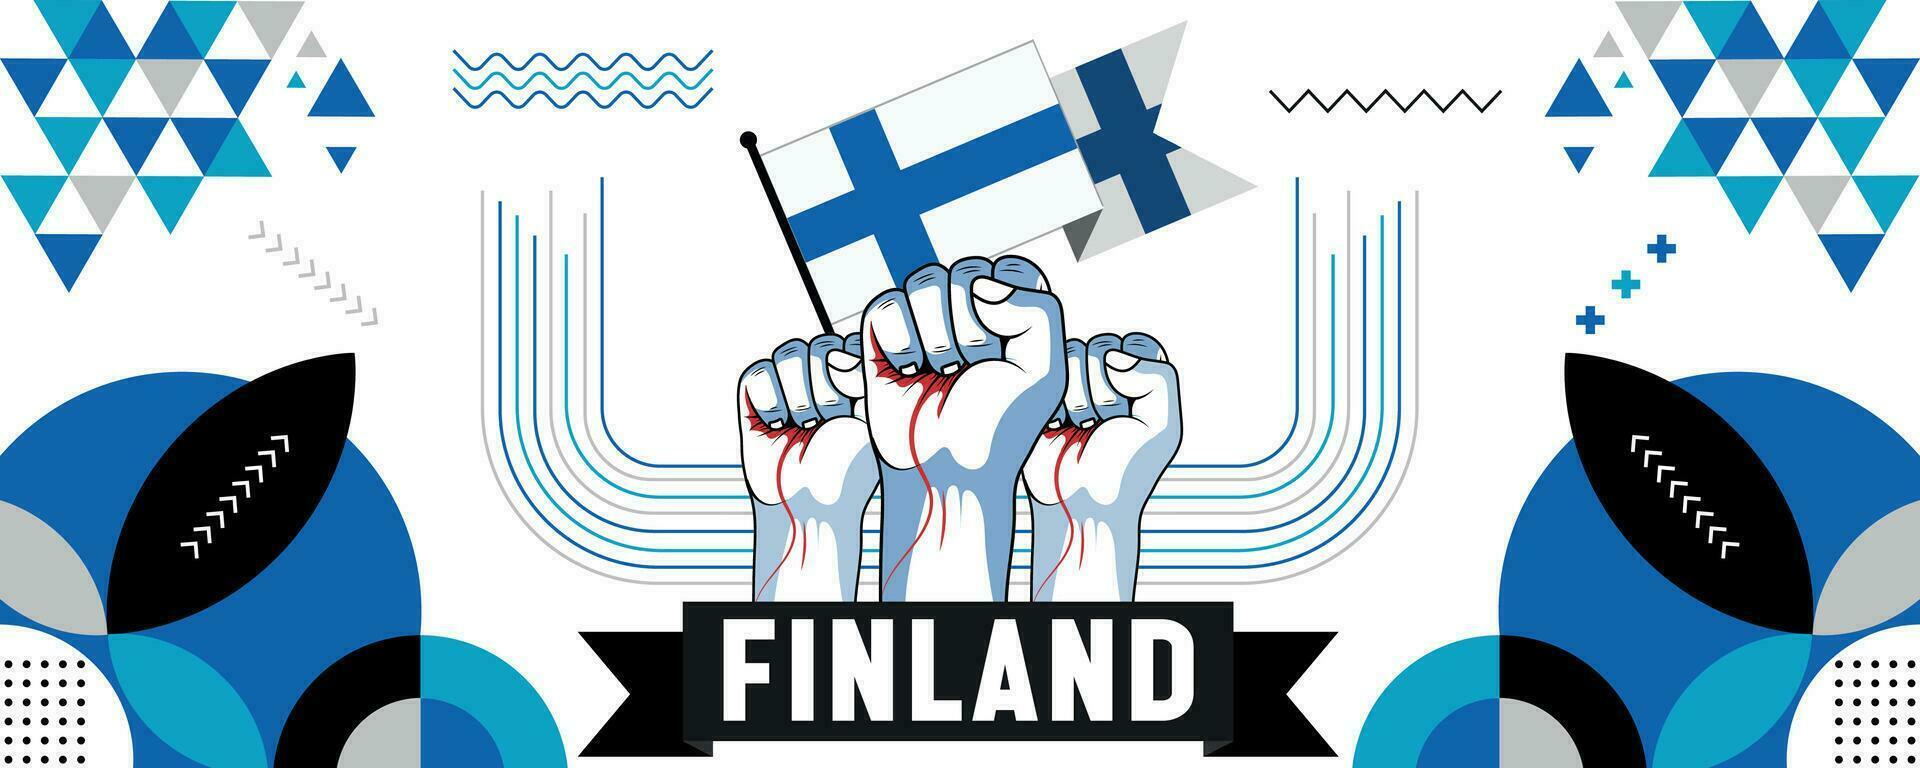 Finlandia nazionale o indipendenza giorno bandiera design per nazione celebrazione. bandiera e carta geografica di Finlandia con sollevato pugni. moderno retrò design con astratto geometrico icone. vettore illustrazione.